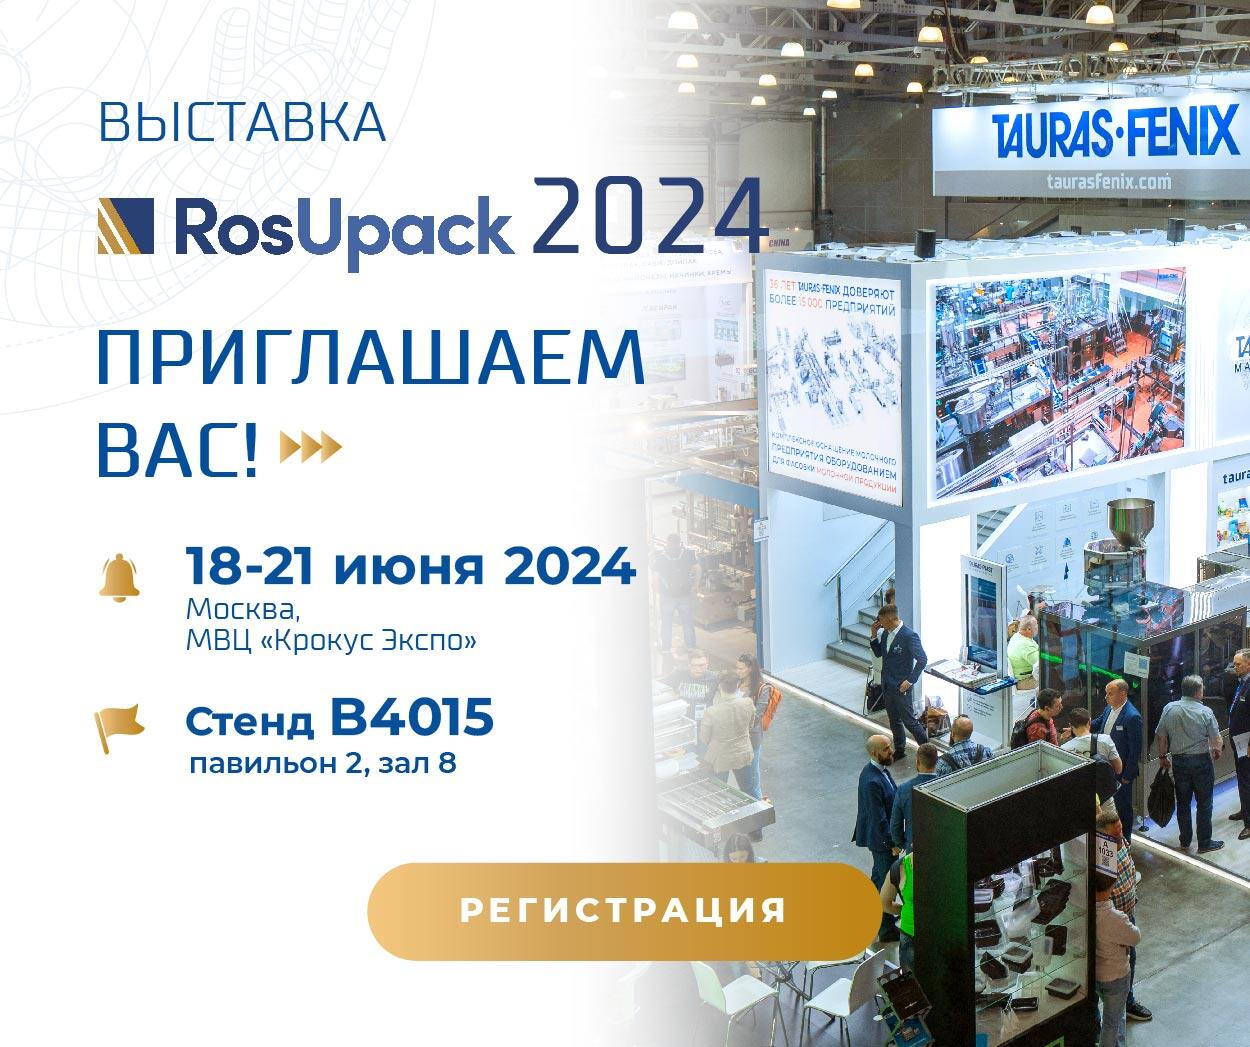 Москва — до встречи на RosUpack 2024